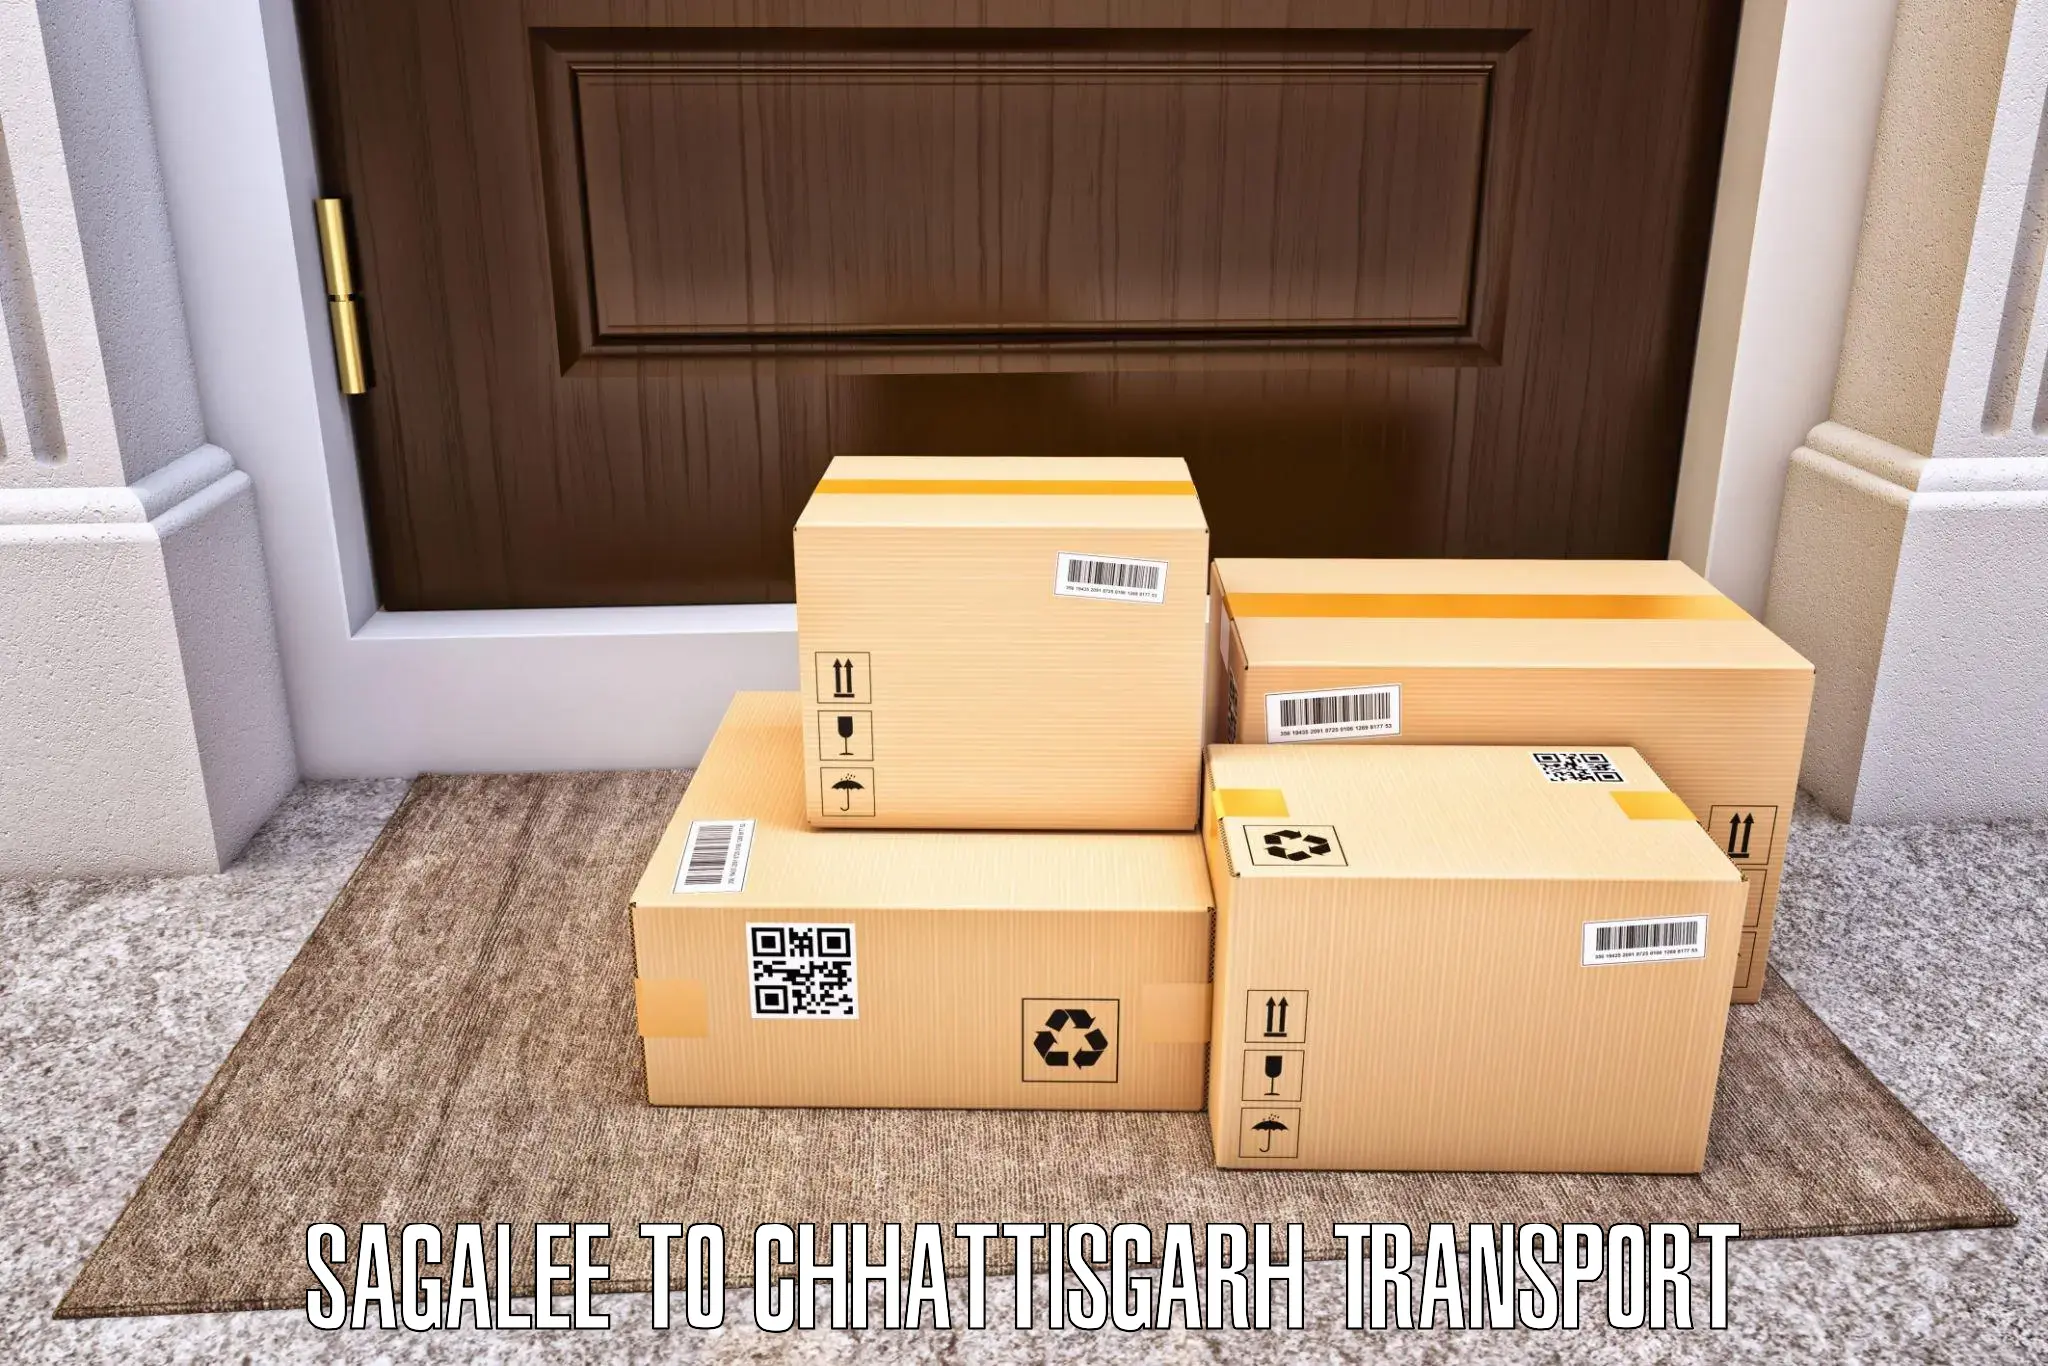 Transport shared services in Sagalee to Bijapur Chhattisgarh